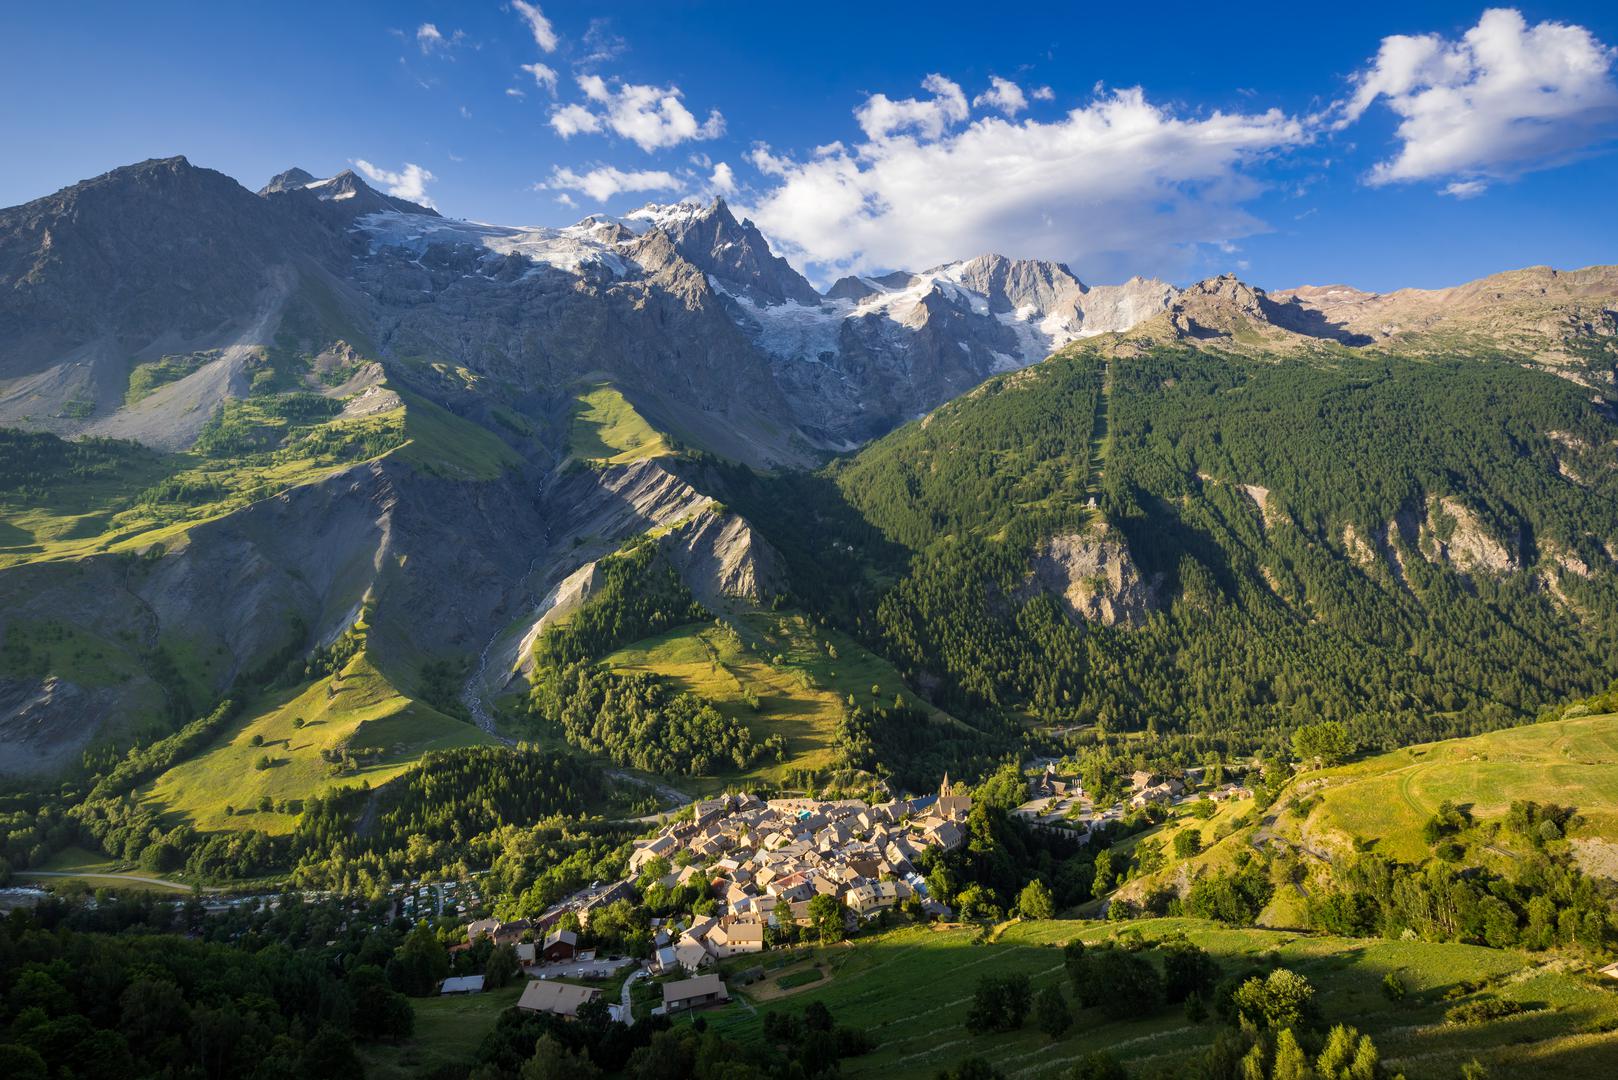 Prvih pet zaokružuje nacionalni park Ecrins u Francuskoj. Vijeće Europe je ovom parku dalo čast biti ‘Europski planinski park’, što je dokaz njegovih zapanjujućih alpskih krajolika i raznolikih ekosustava.